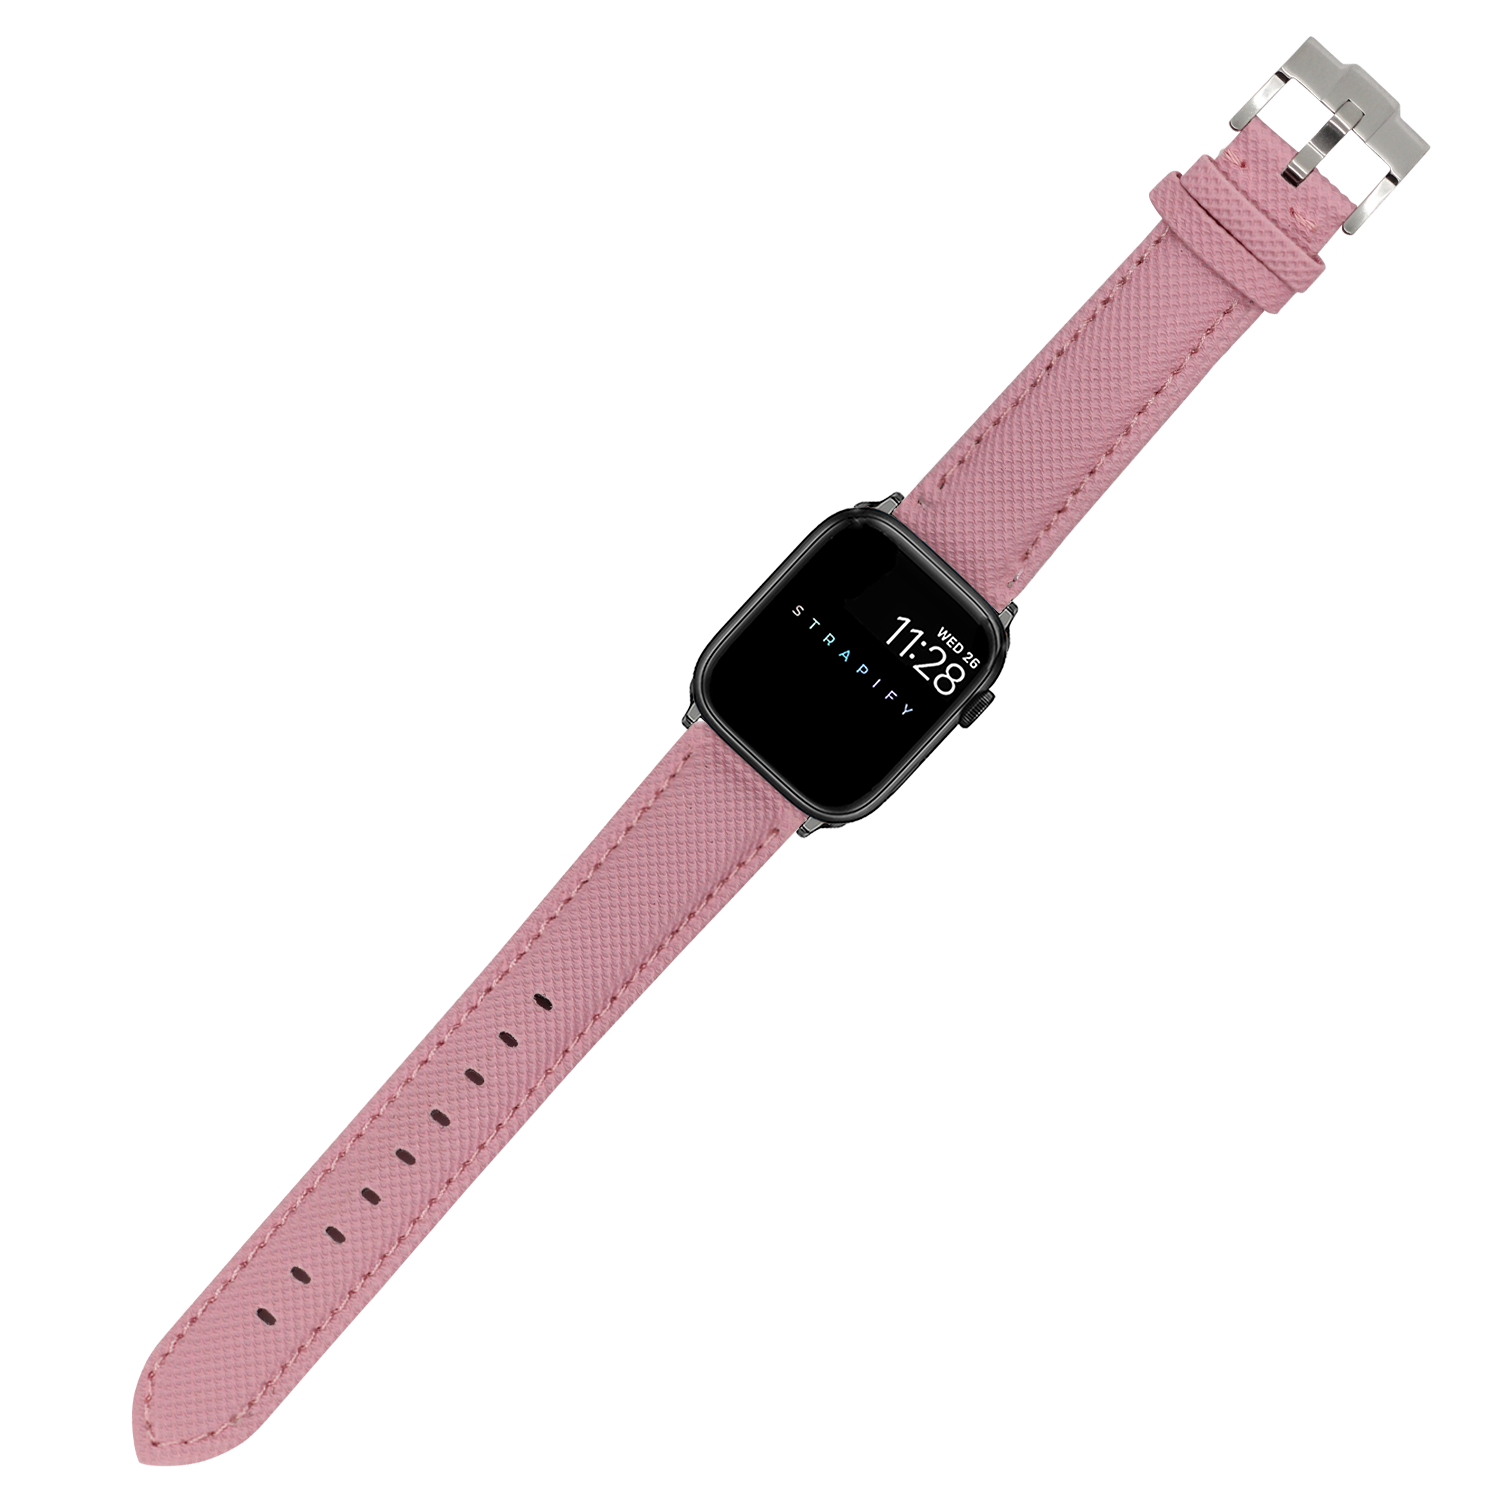 [Apple Watch] Sailcloth - Pink